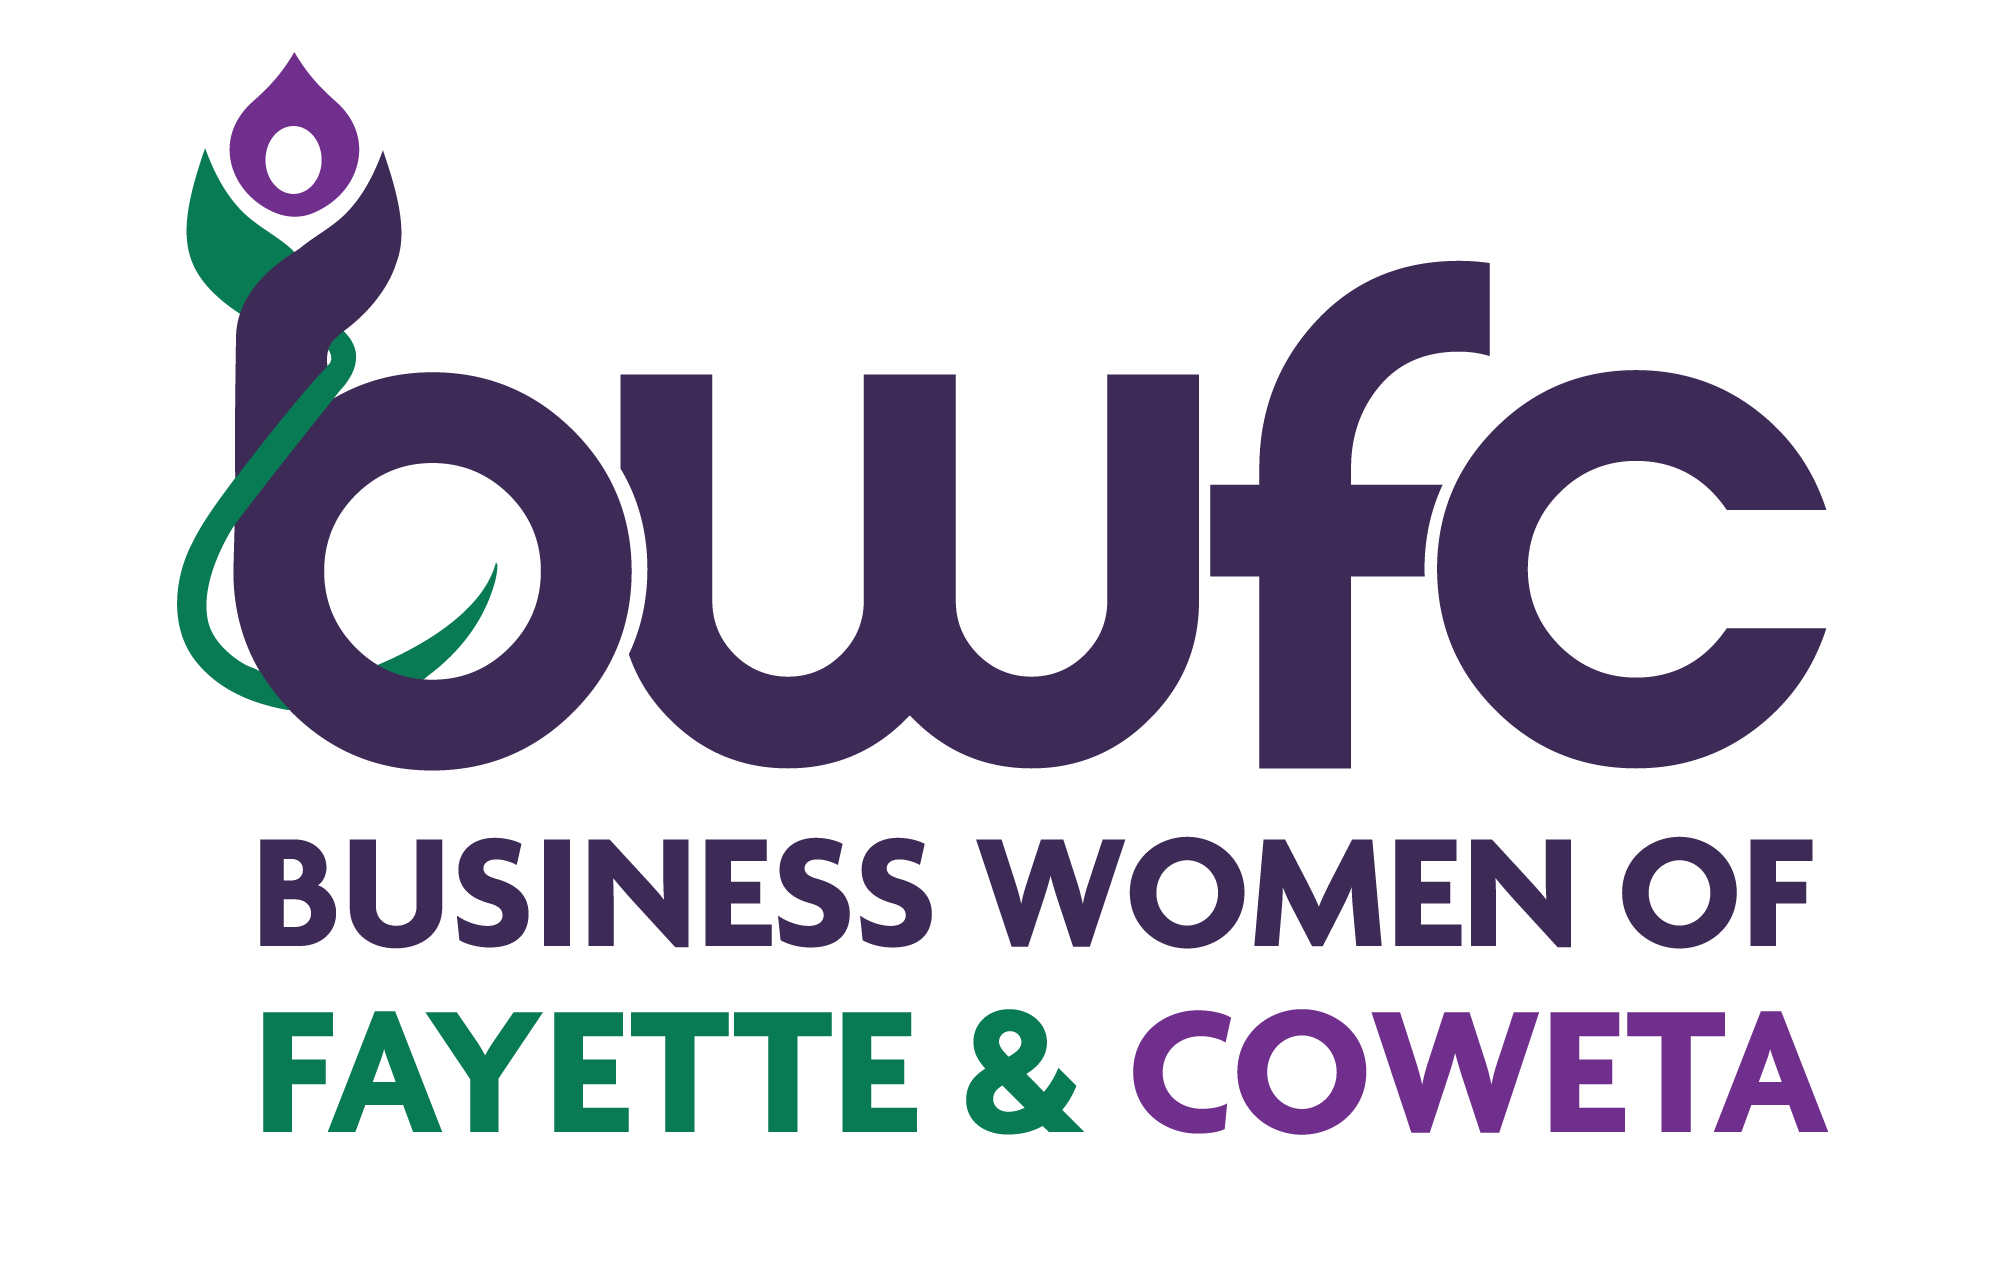 Business Women of Fayette & Coweta